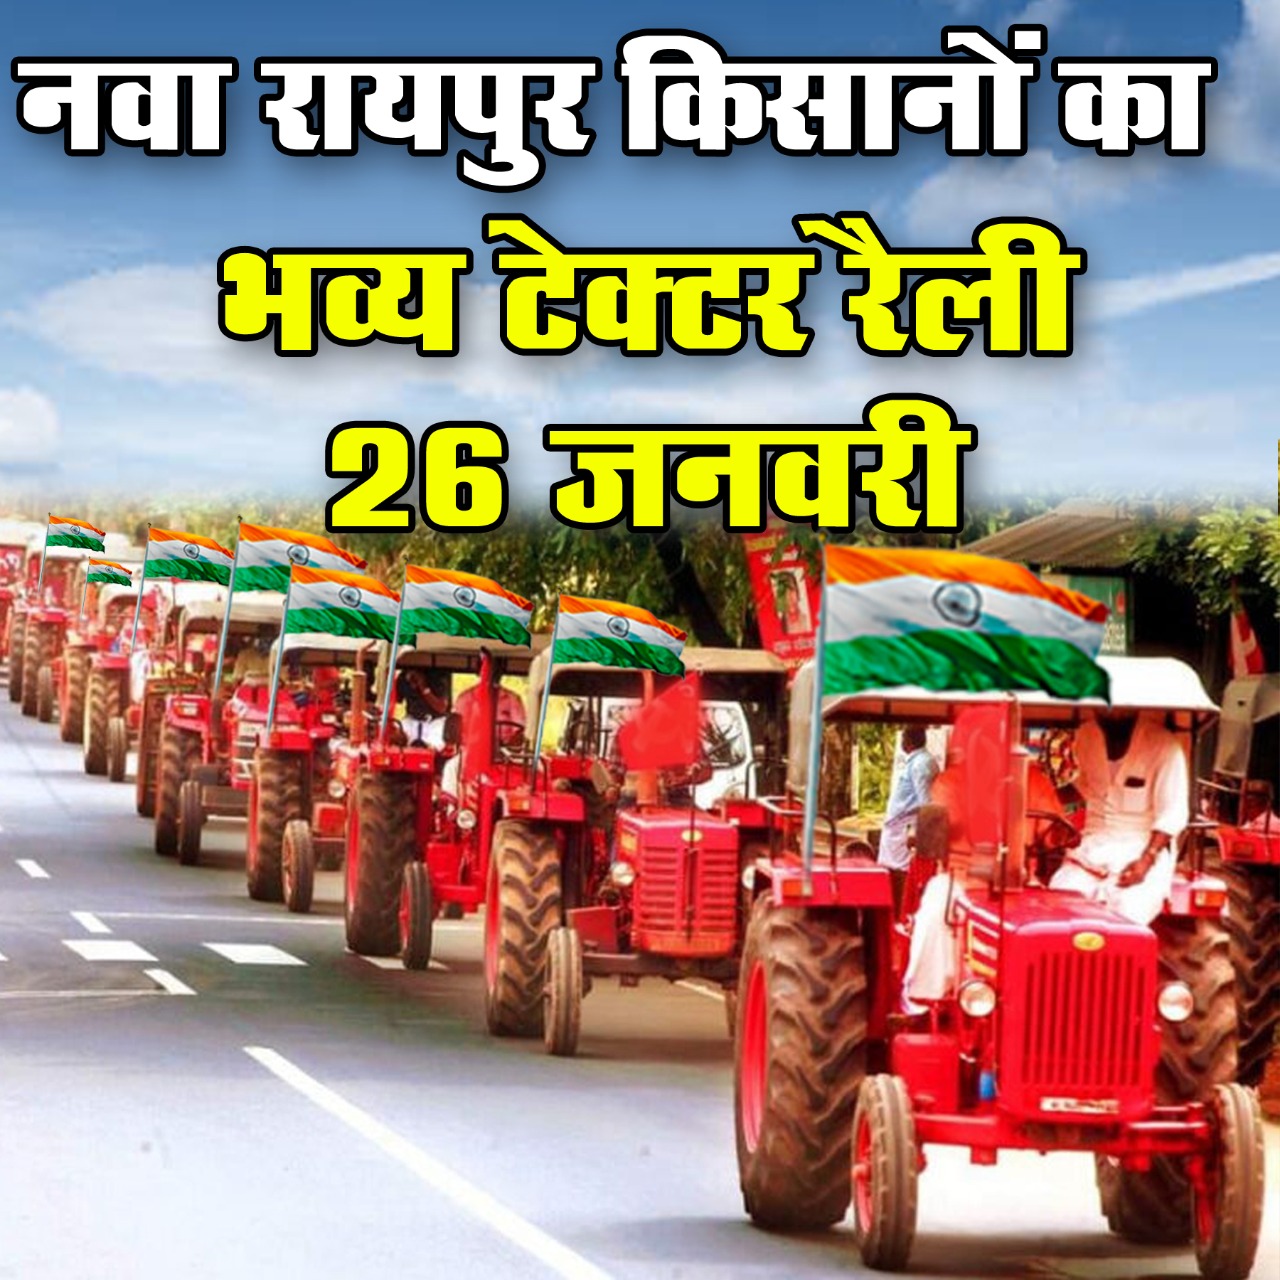 नवा रईपुर किसान आंदोलन में काली 26 जनवरी टेक्टर रैली म समर्थन देबो